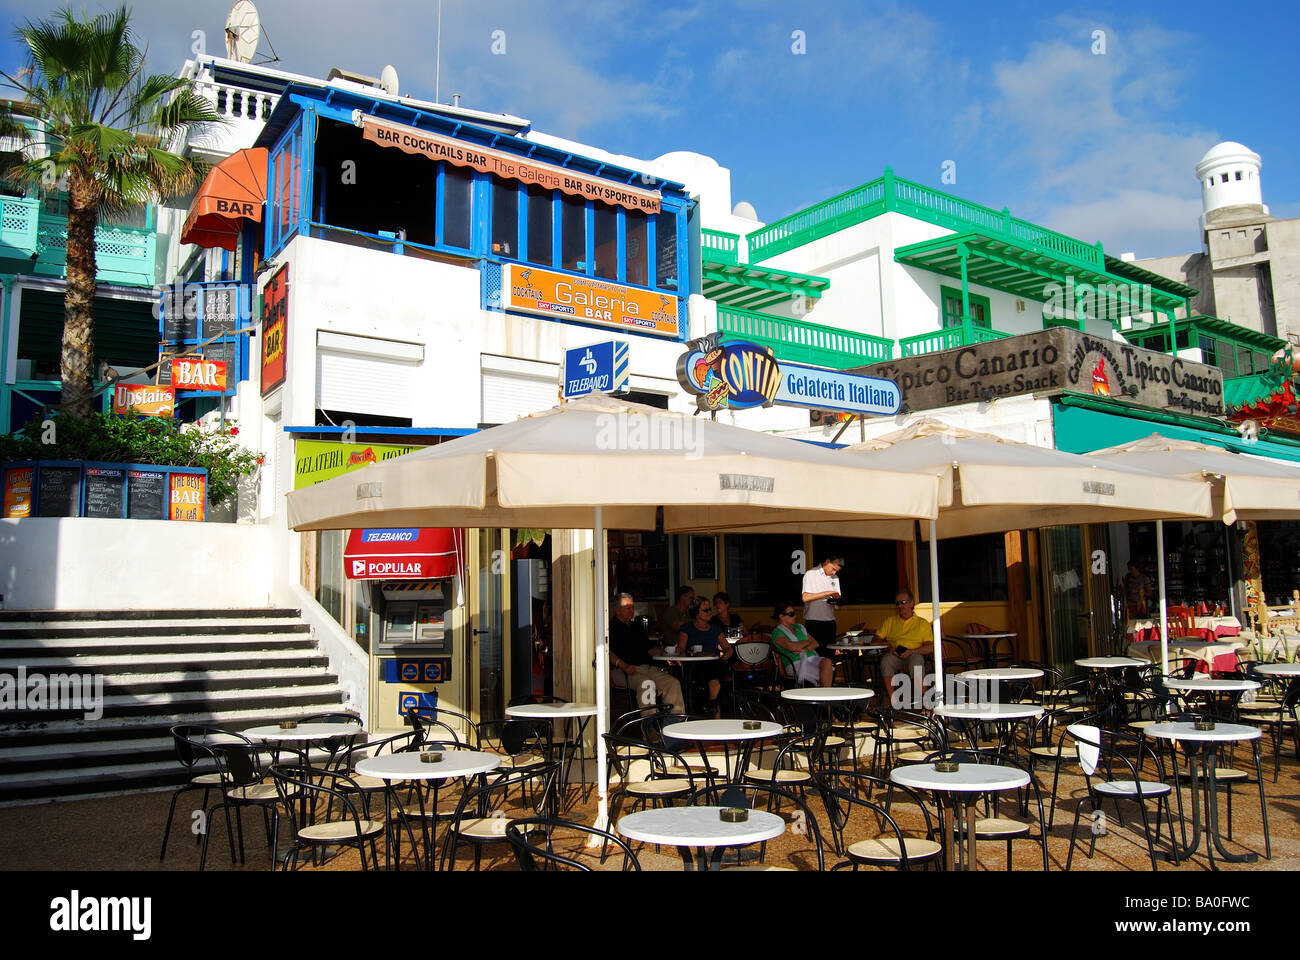 Promenade cafe, Playa Blanca, Lanzarote, Canary Islands, Spain Stock Photo